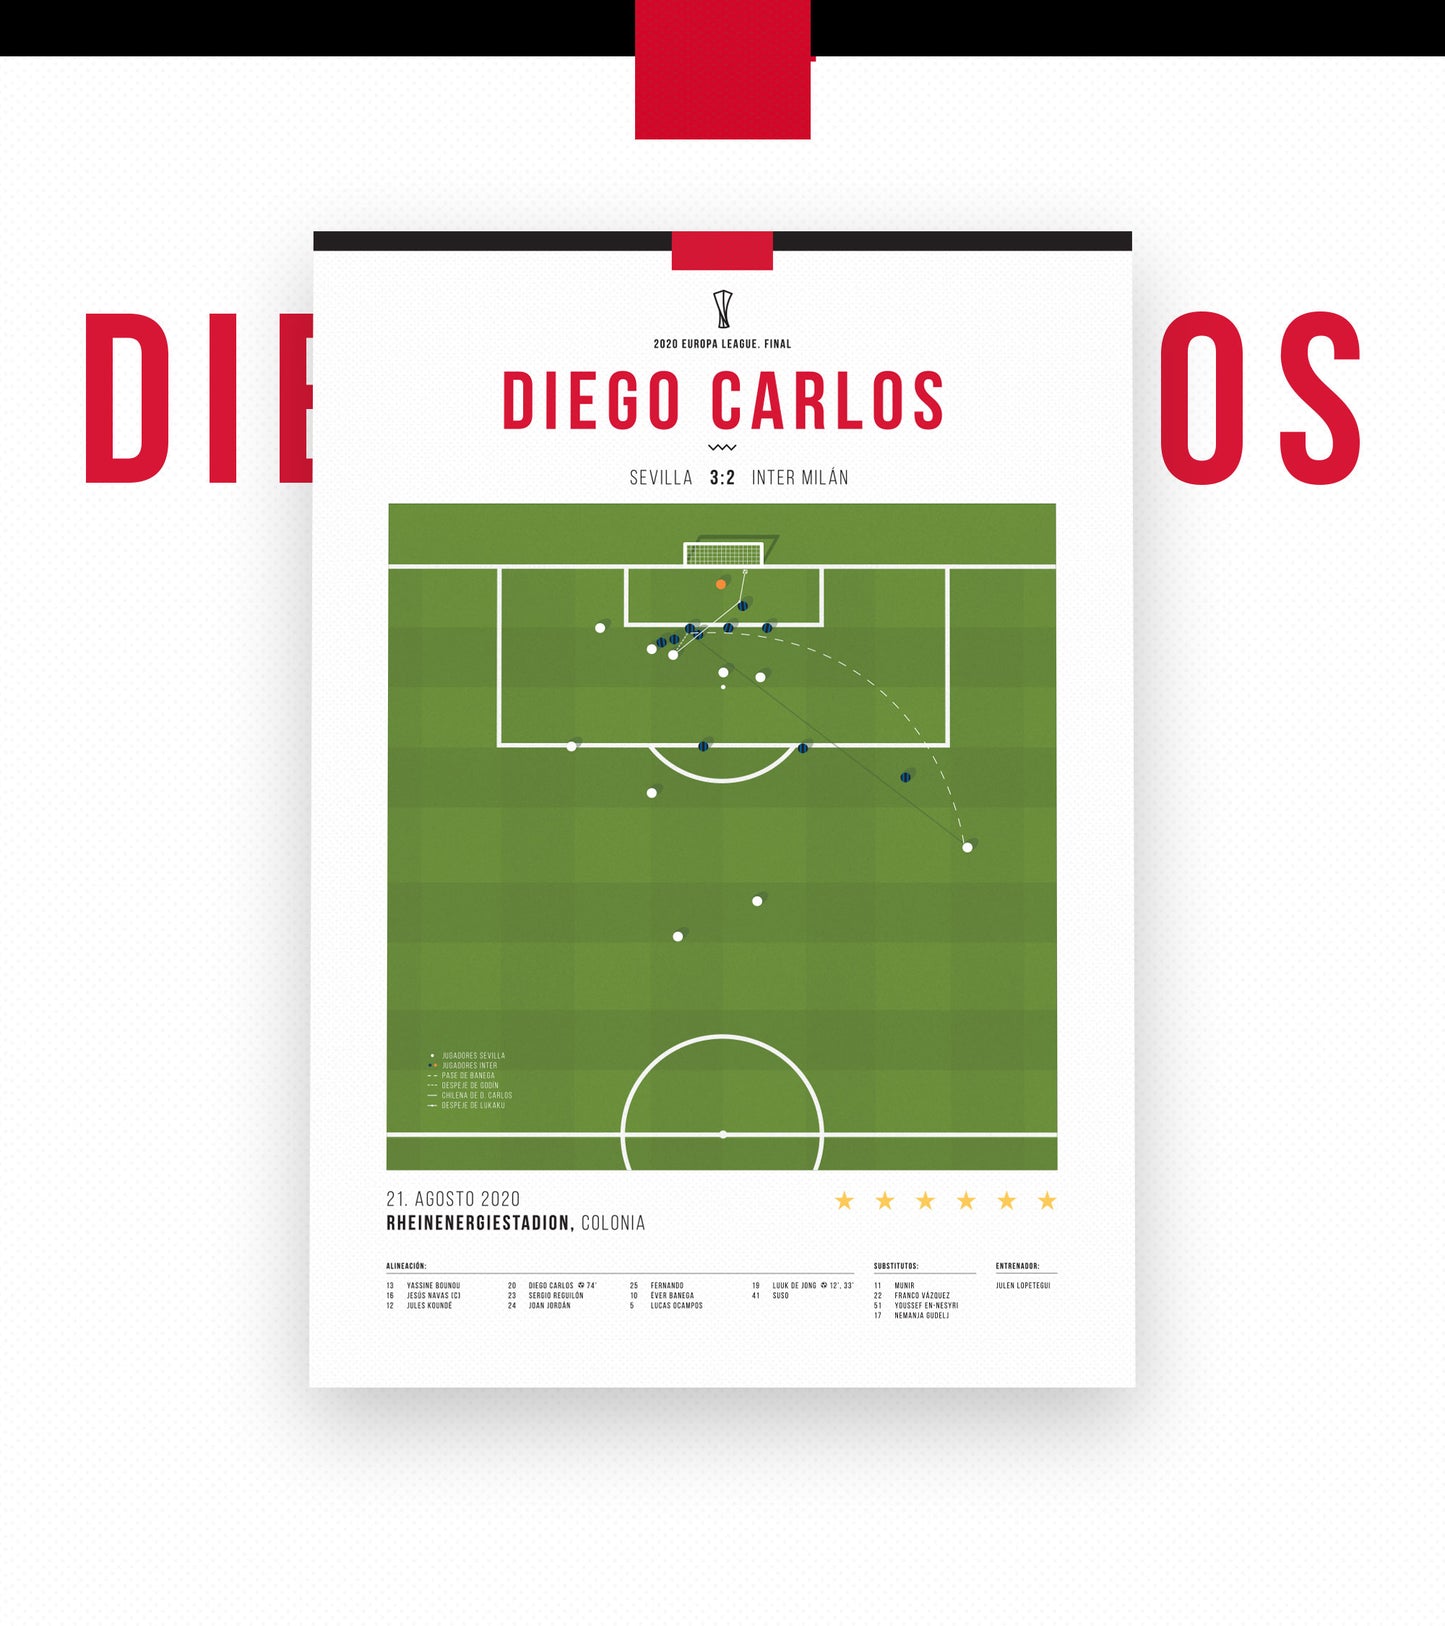 Diego Carlos Overhead Kick vs Inter Milan